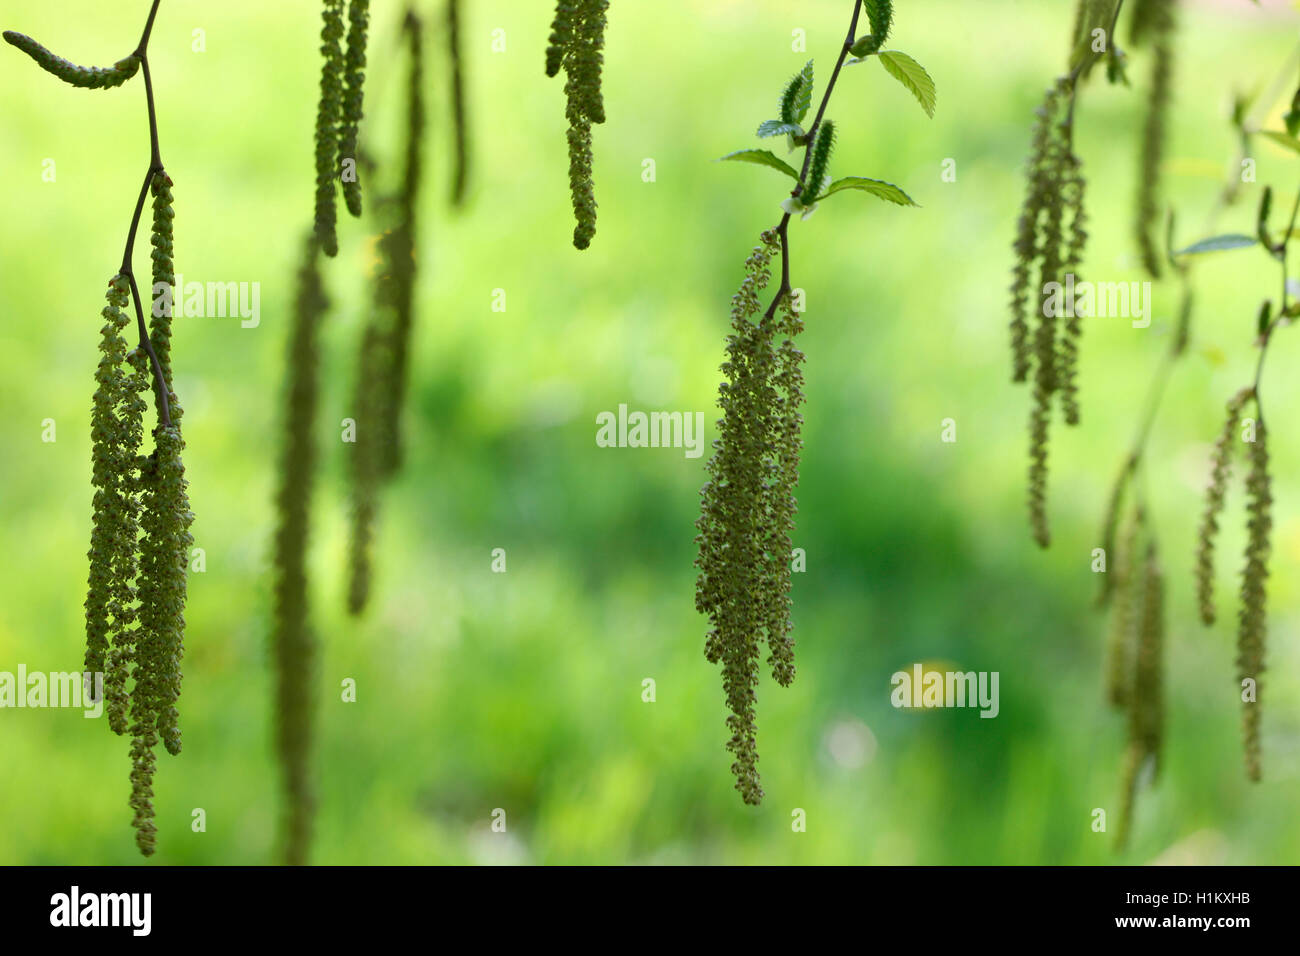 Frühling Betula Insignis, Birke Kätzchen, unverwechselbar und schöne Jane Ann Butler Fotografie JABP1388 Stockfoto